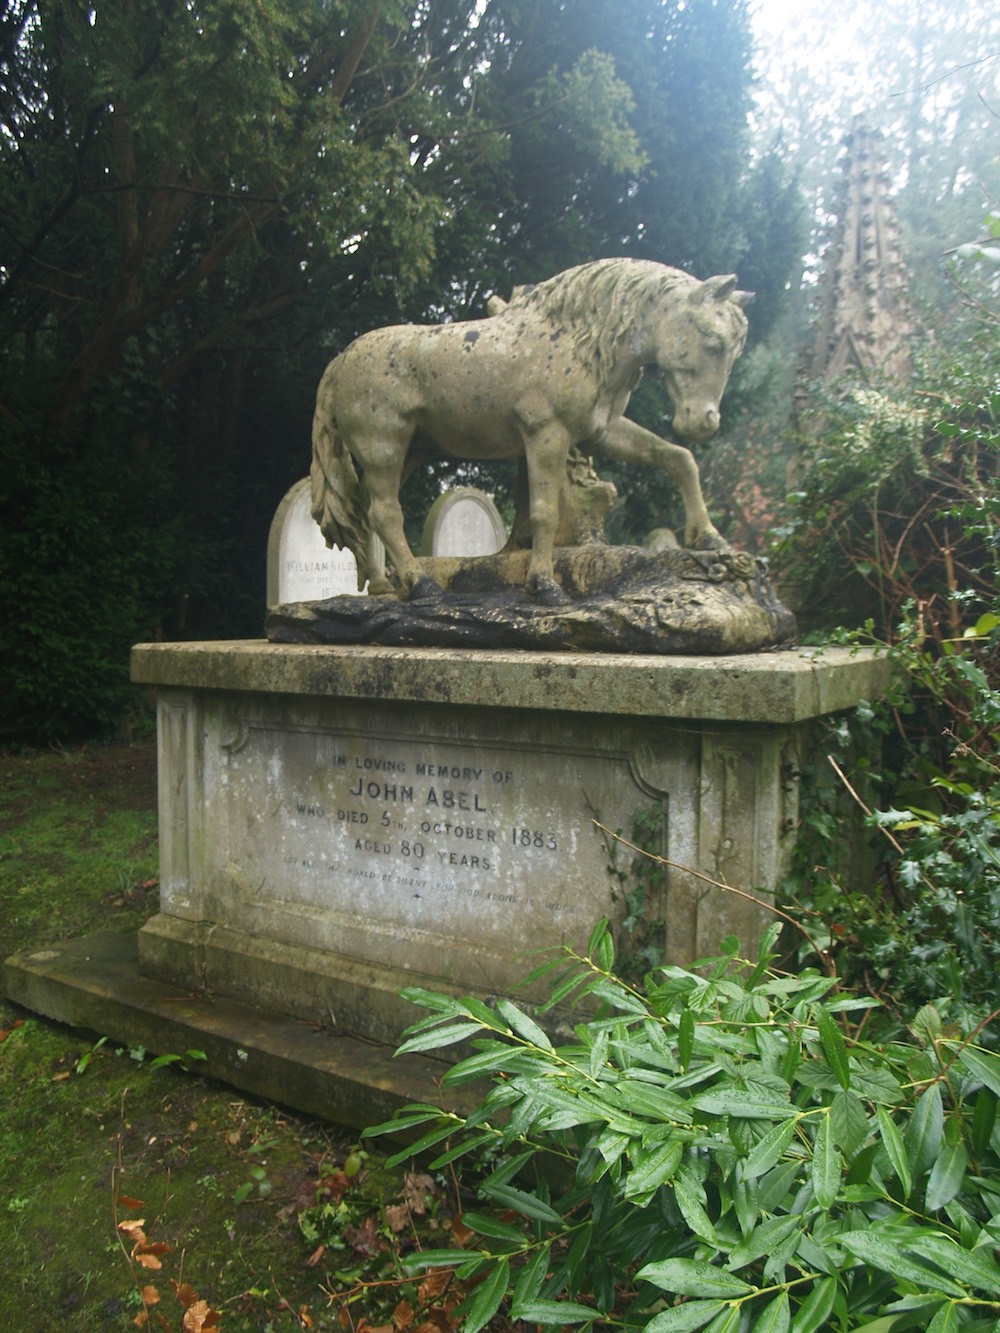 John Abel's grave